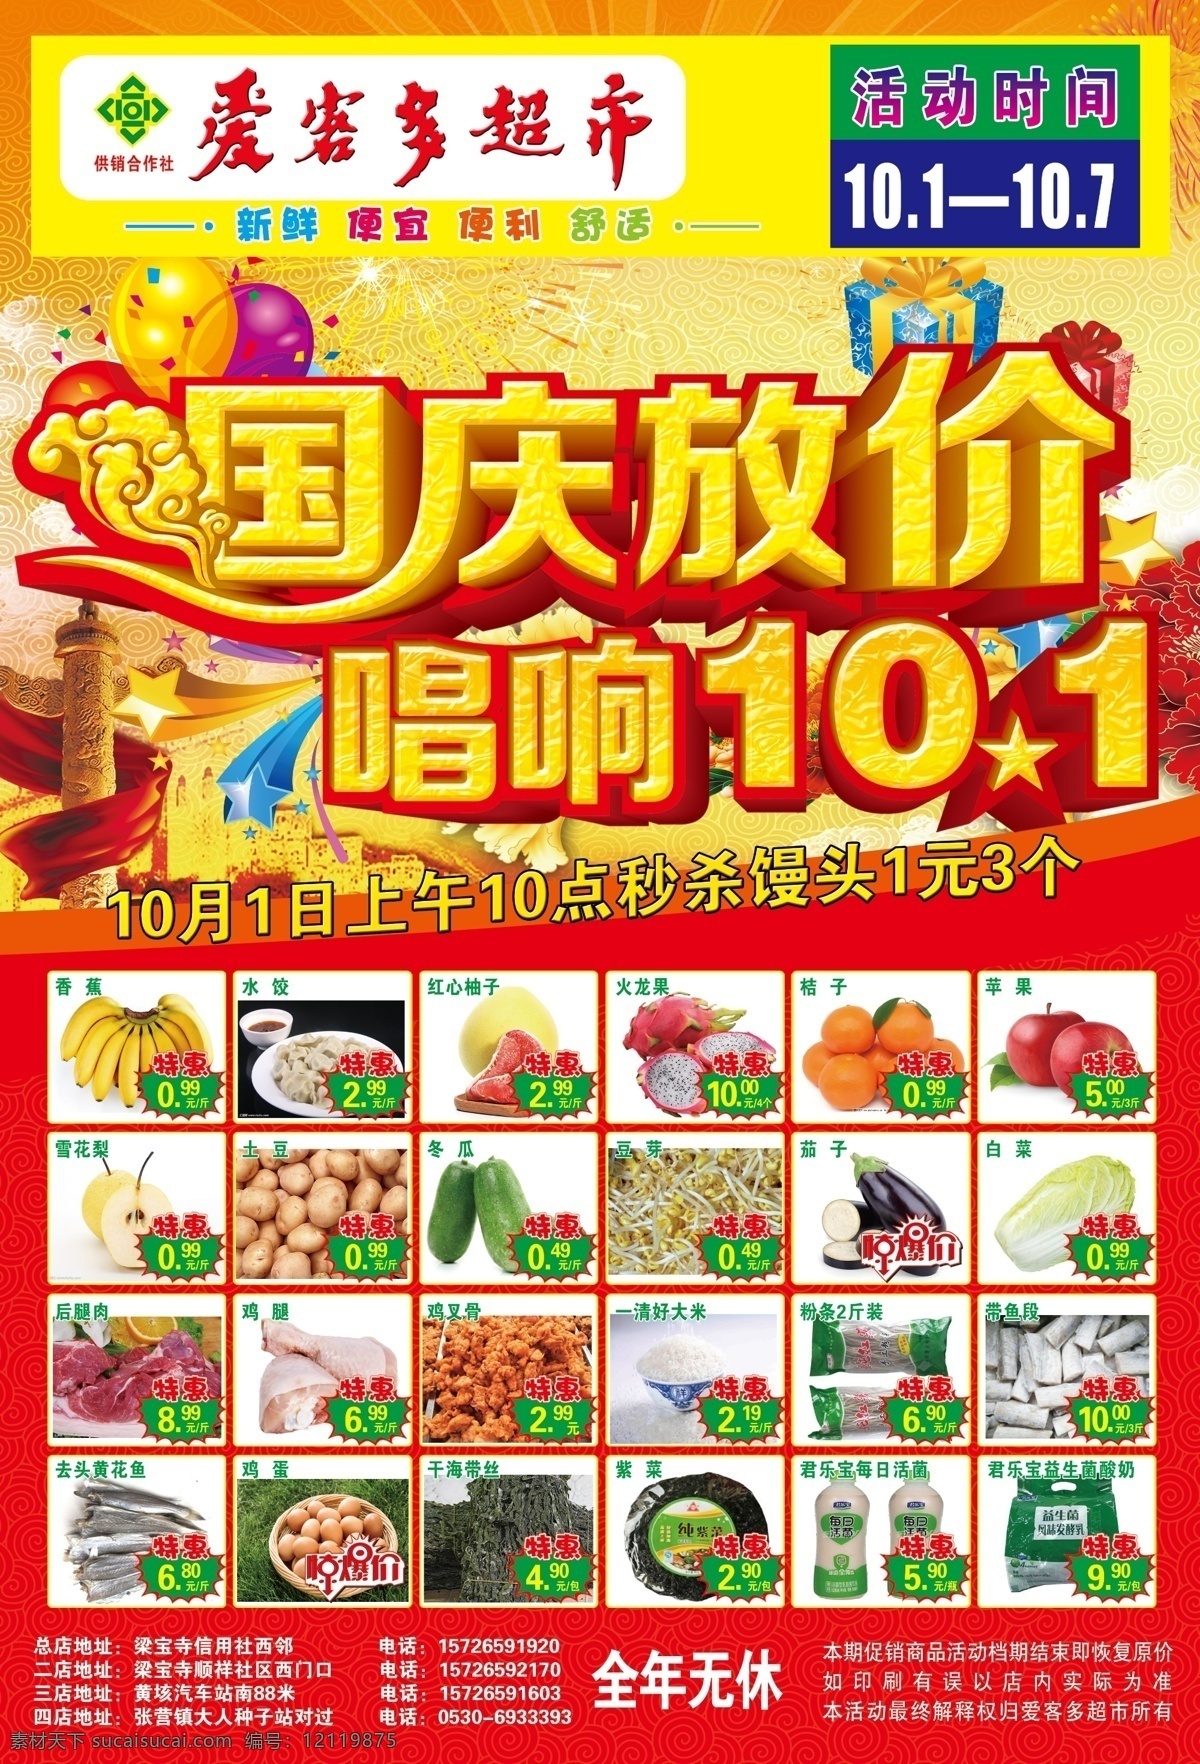 国庆宣传单 国庆节 大放价 超市 宣传单 海报 dm宣传单